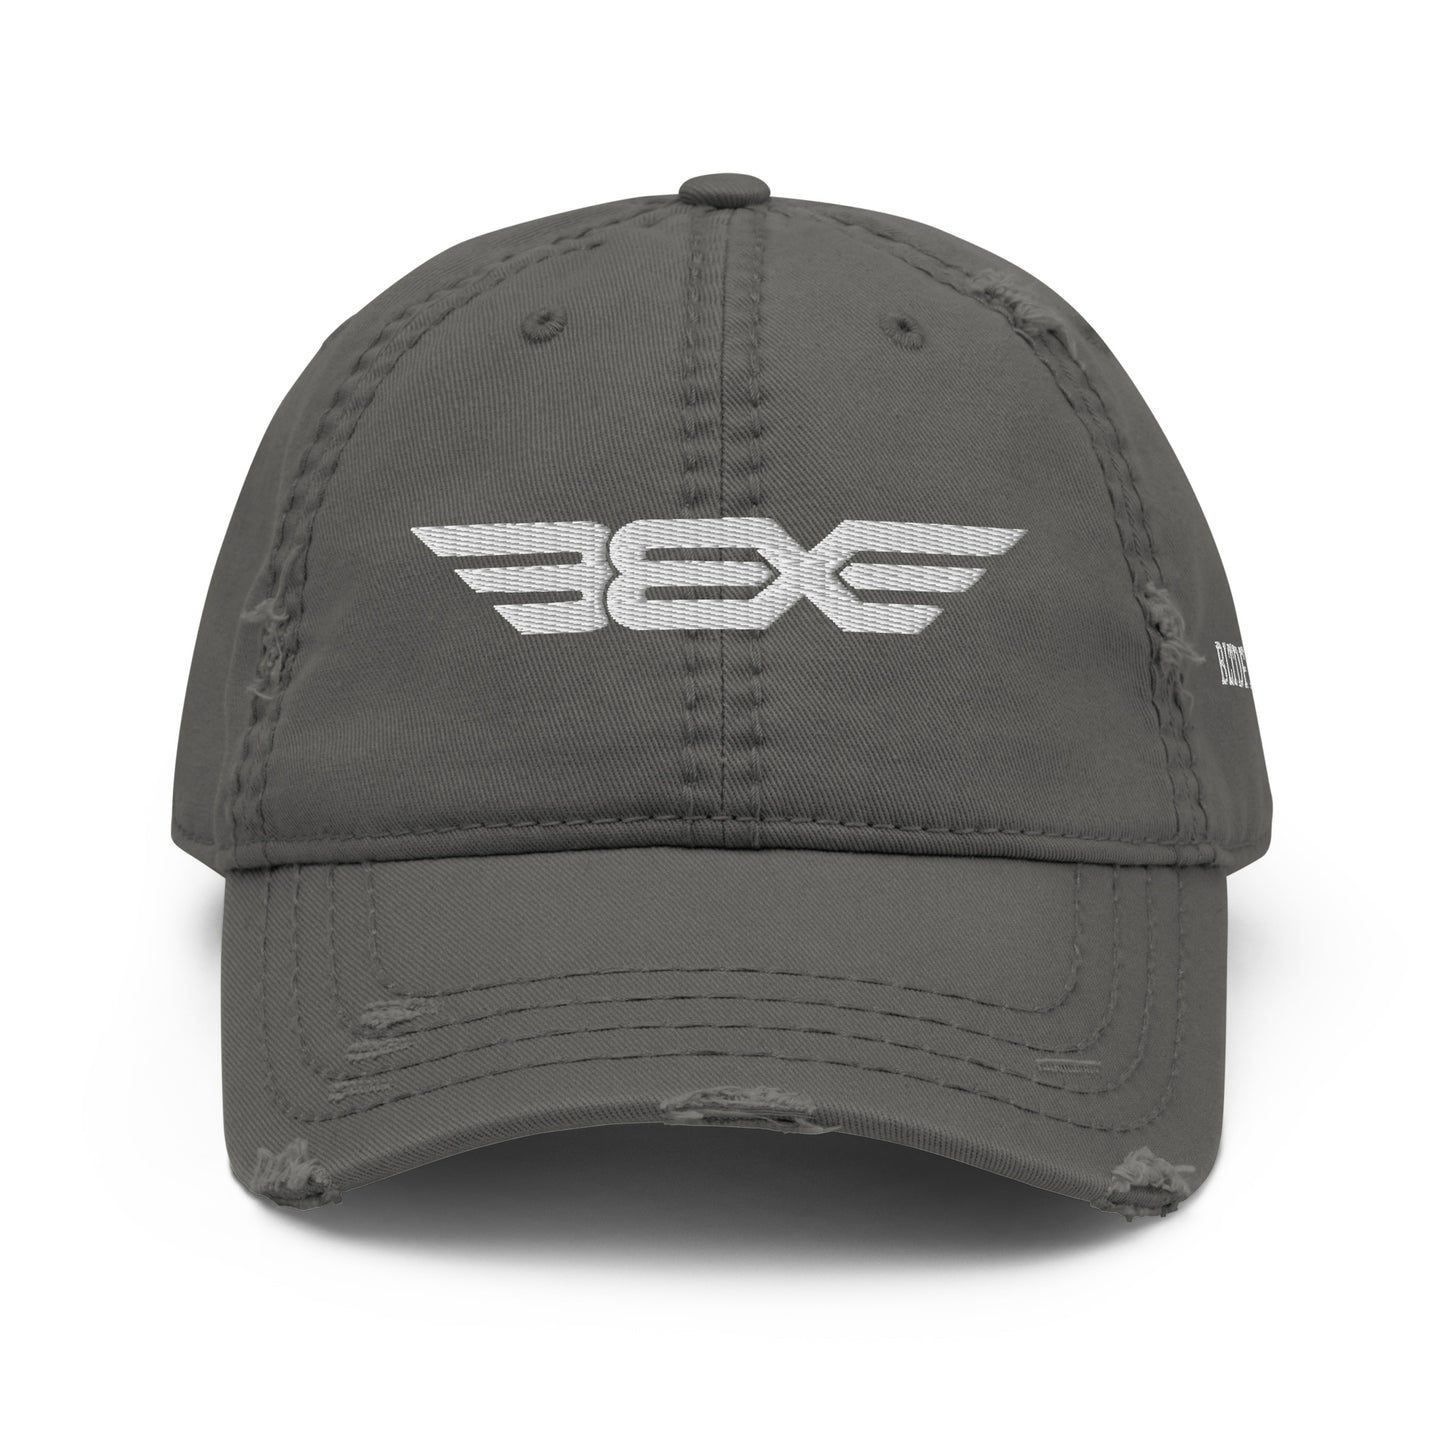 BBX DAD HAT